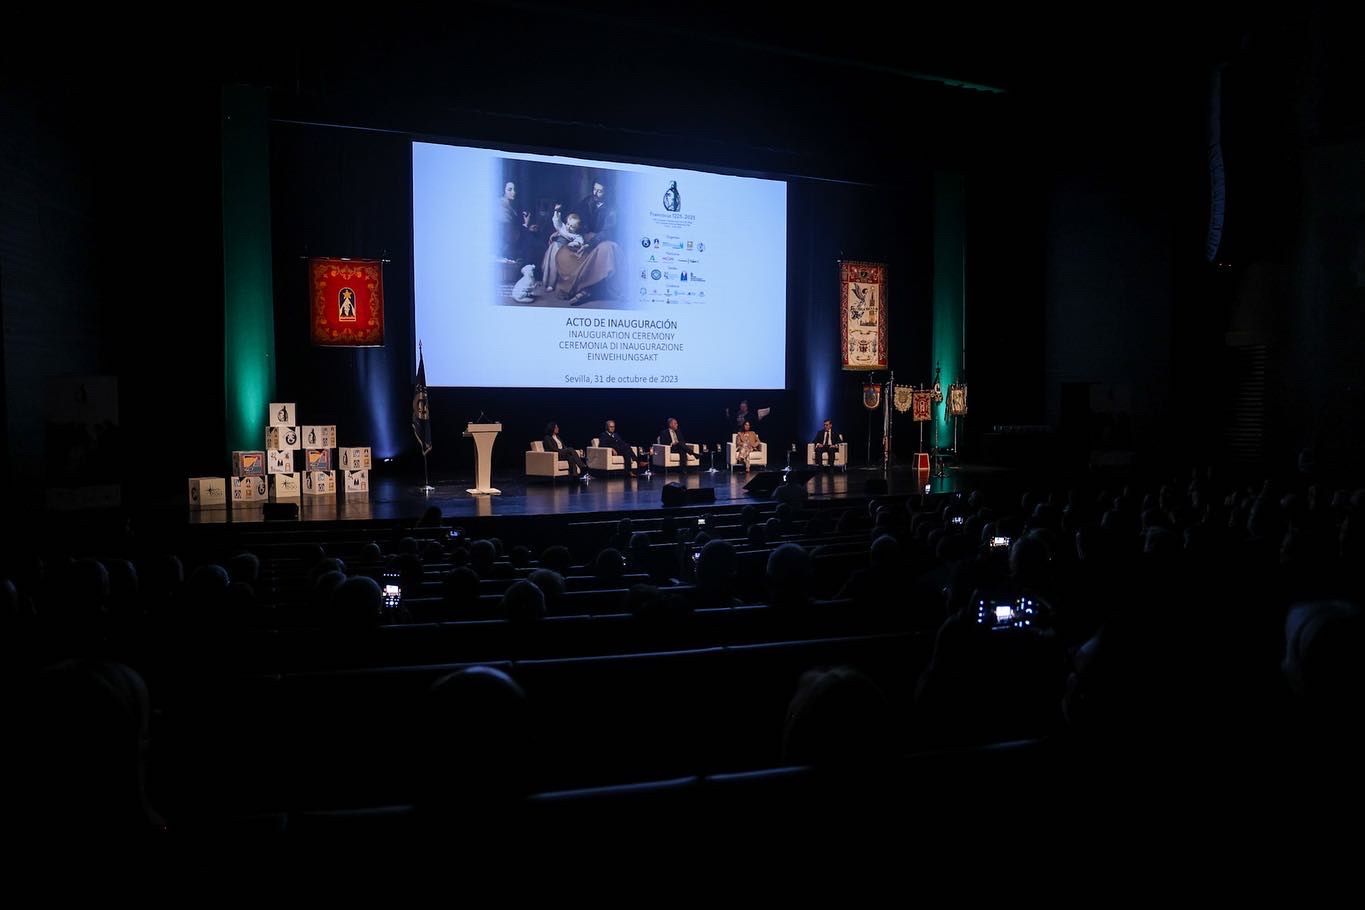 Con 600 participantes de 17 países del mundo, comienza en Sevilla el congreso belenista. En la imagen, el escenario de Fibes durante el congreso.